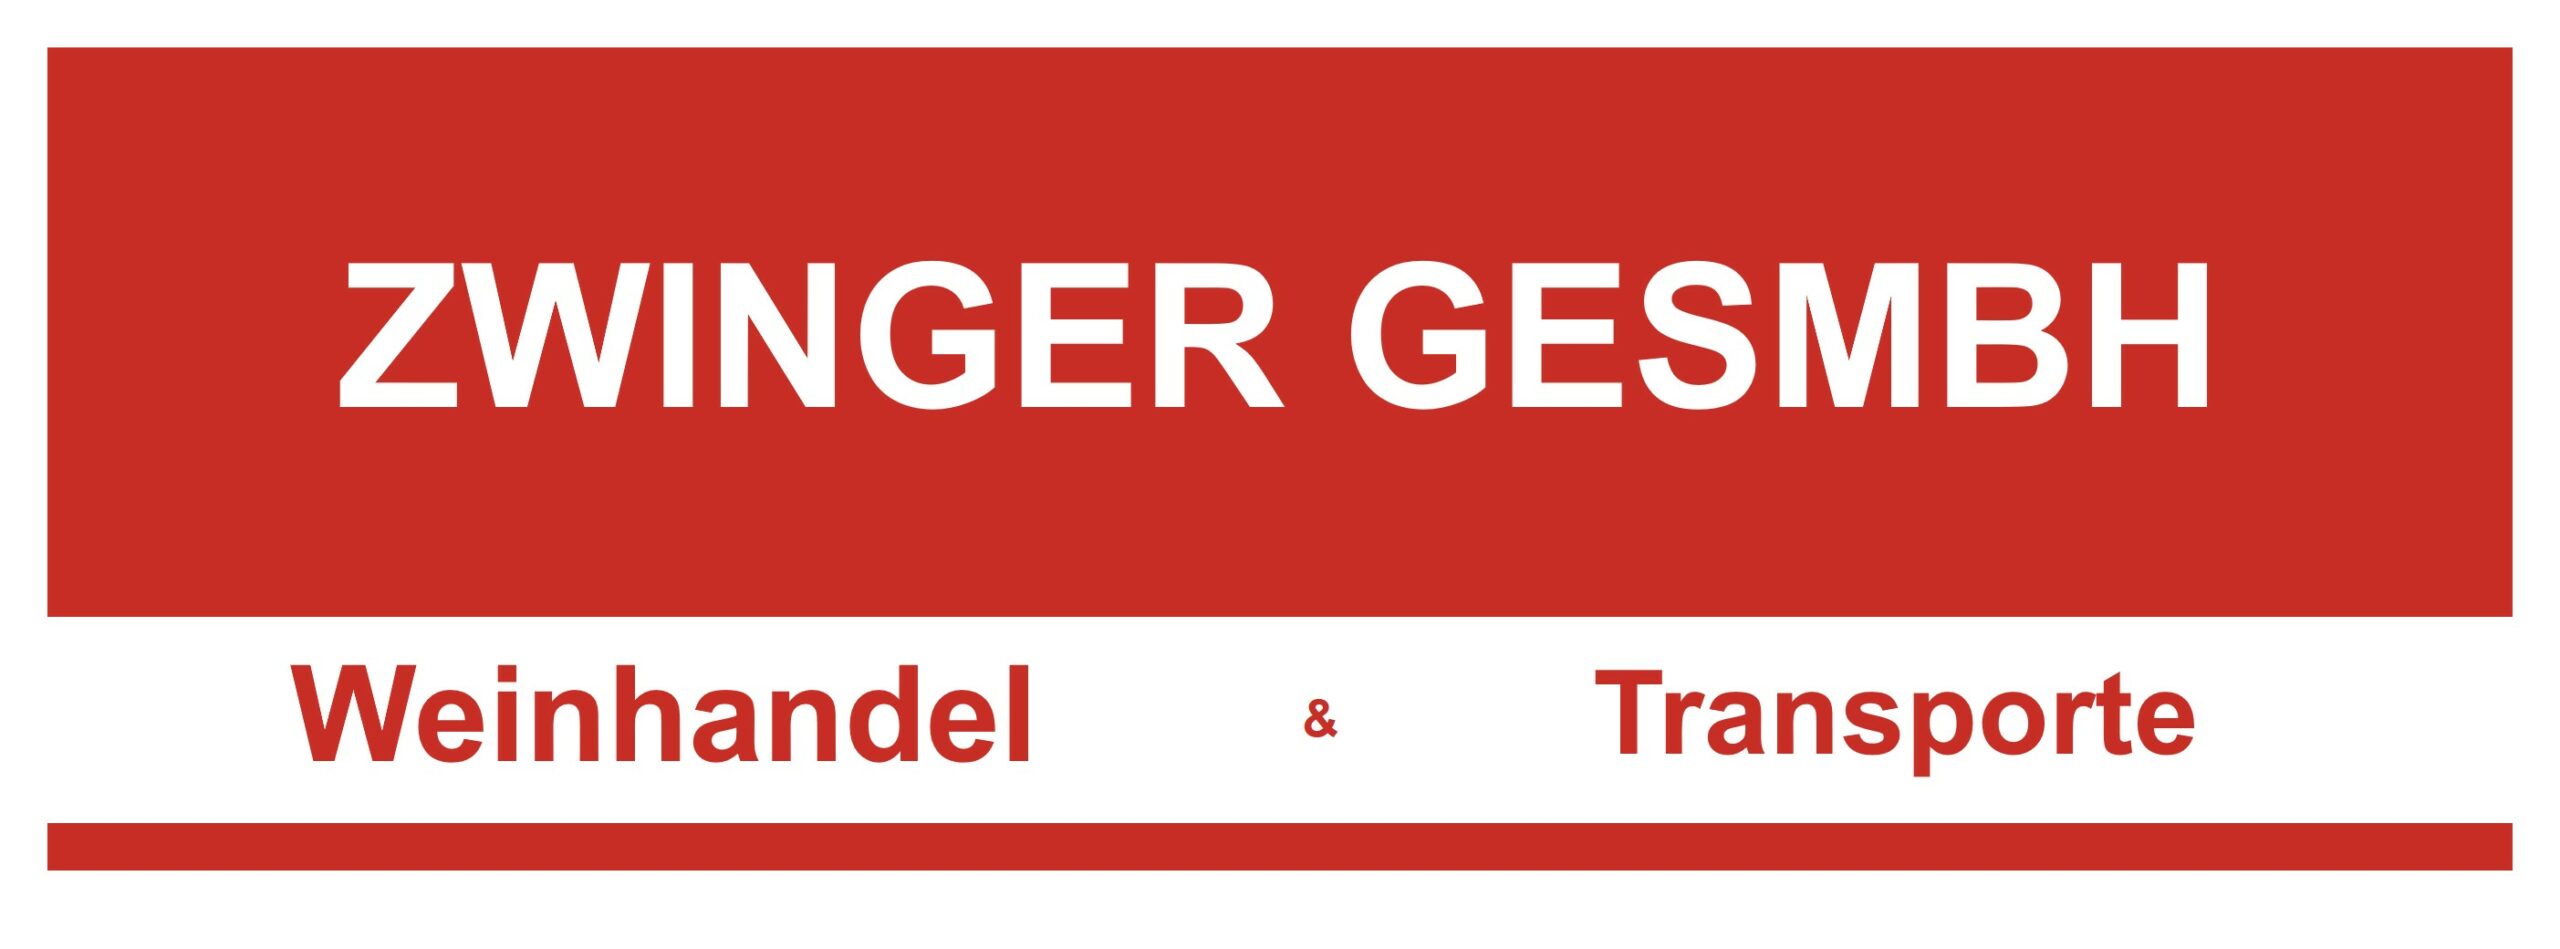 Zwinger_Logo scaled